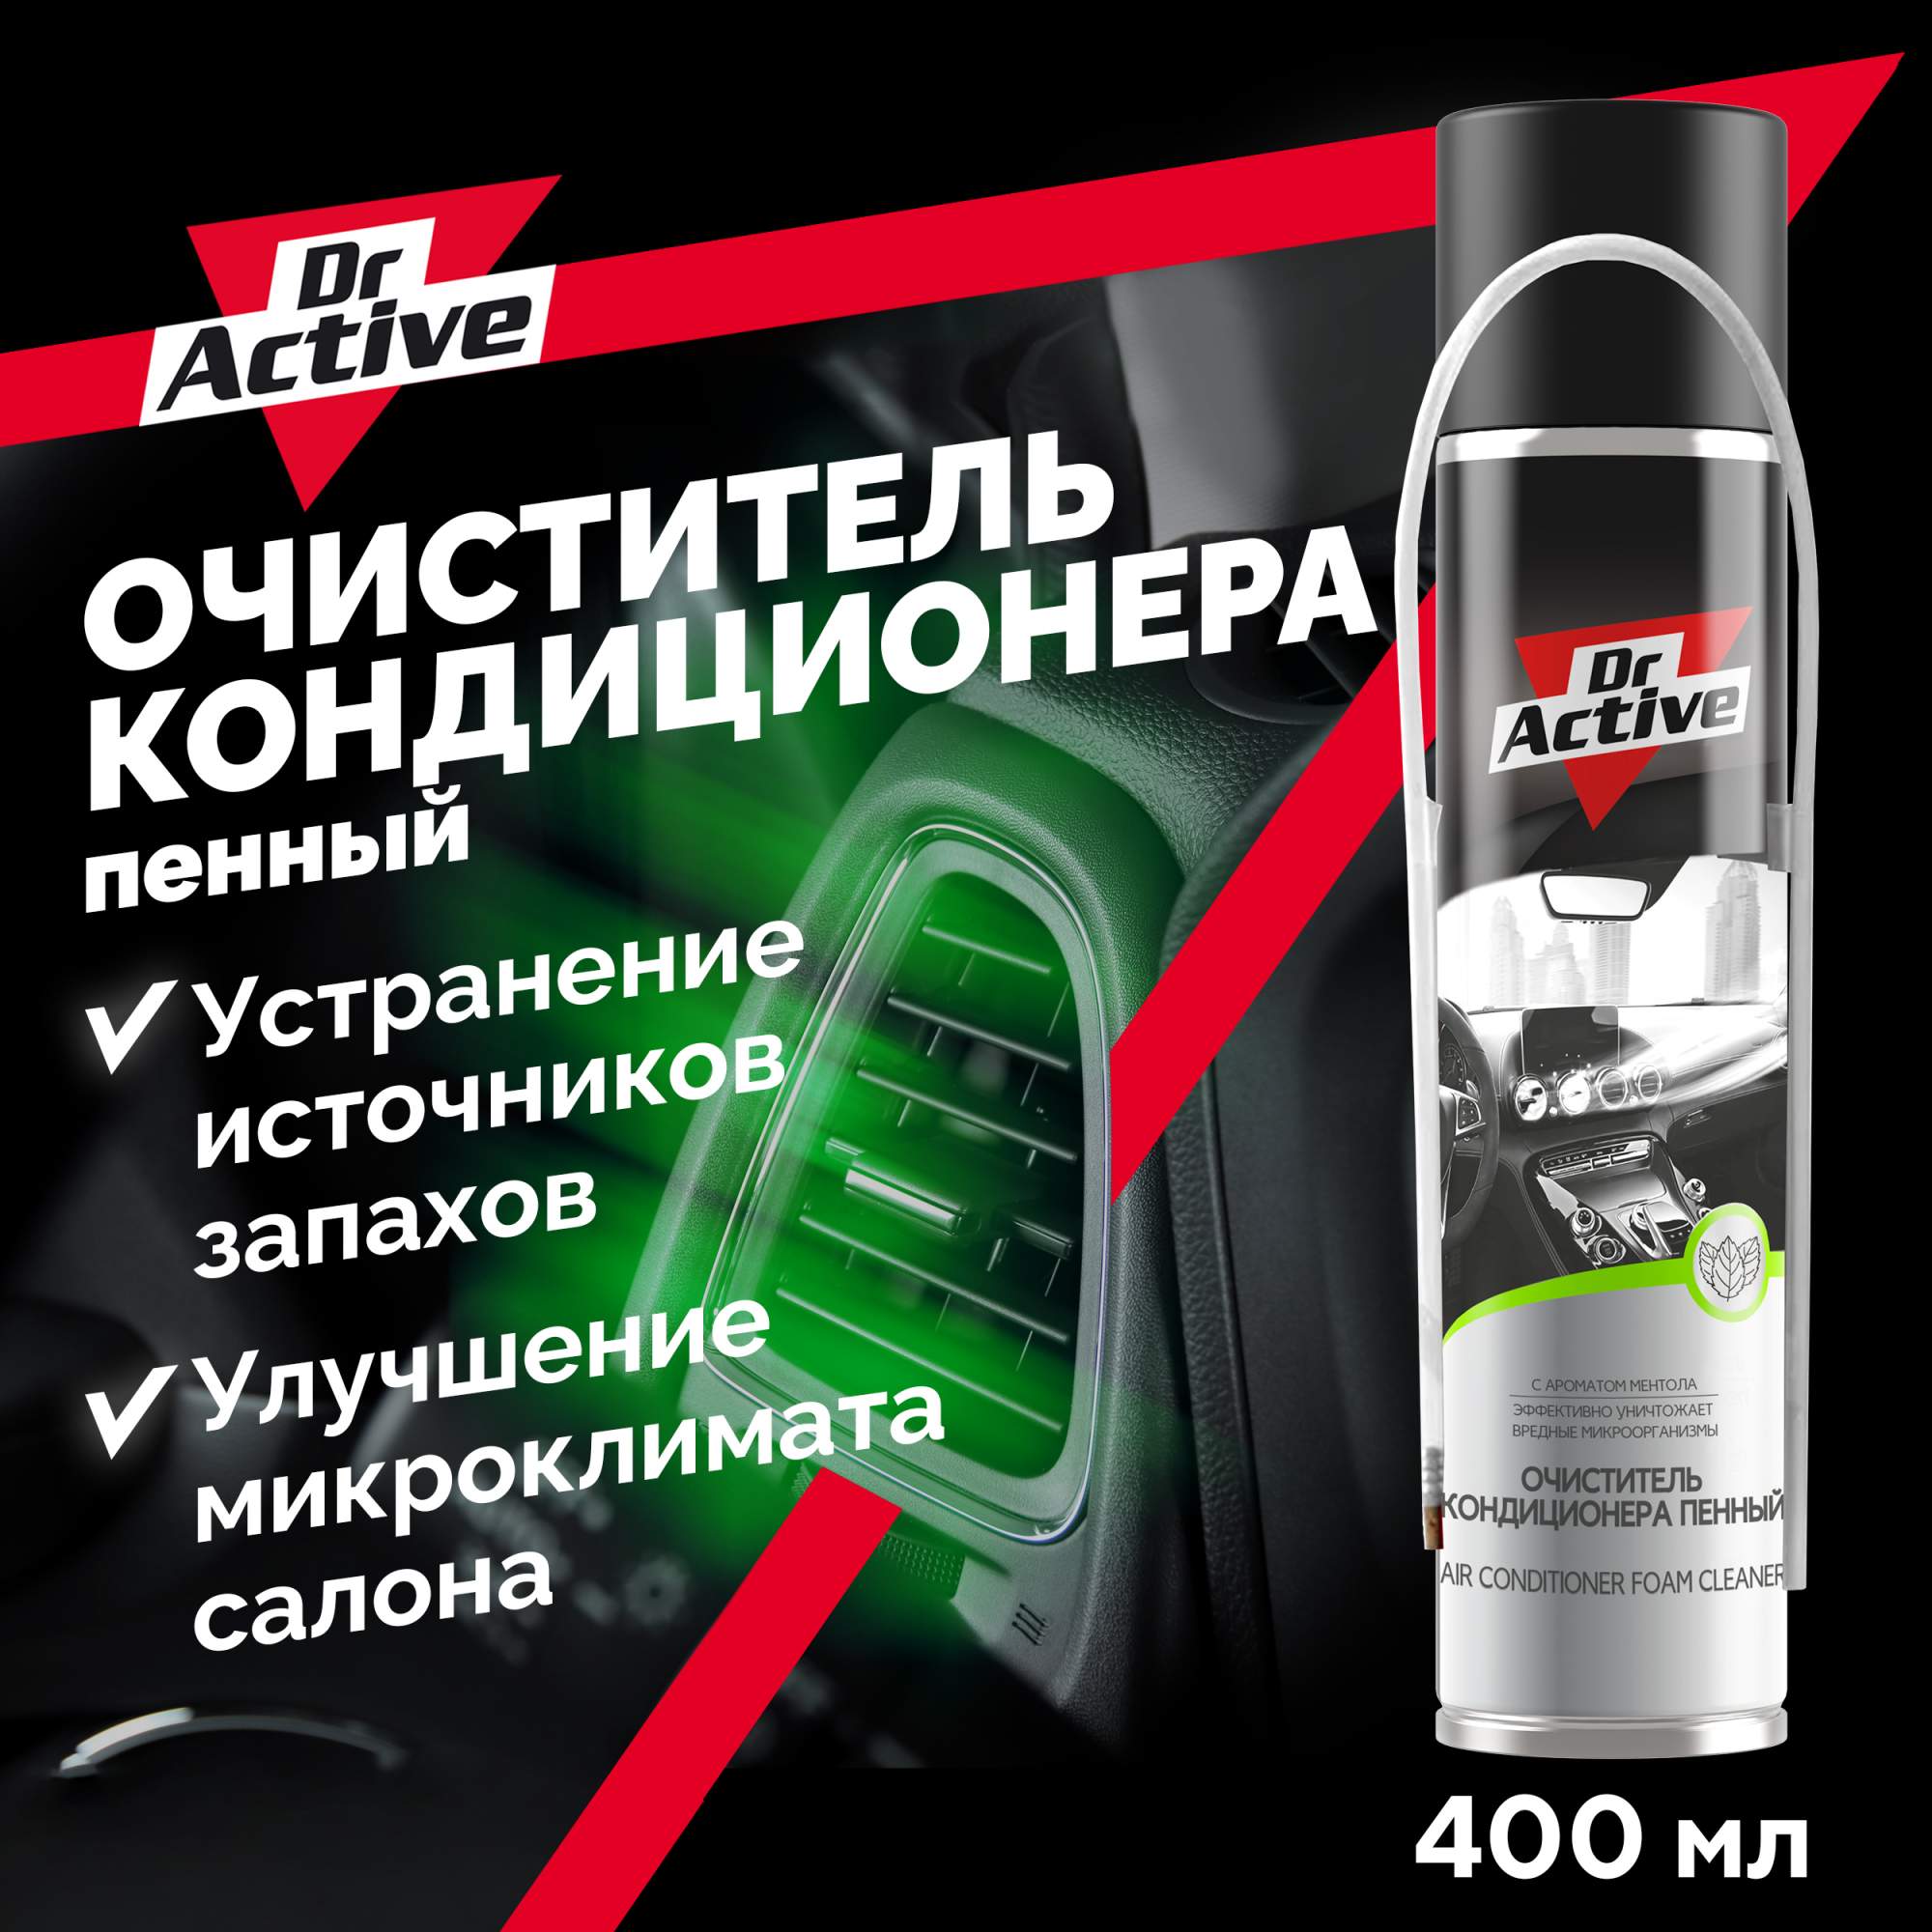 Очиститель освежитель кондиционера пенный Dr. Active, аэрозоль, 400 мл - купить в Москве, цены на Мегамаркет